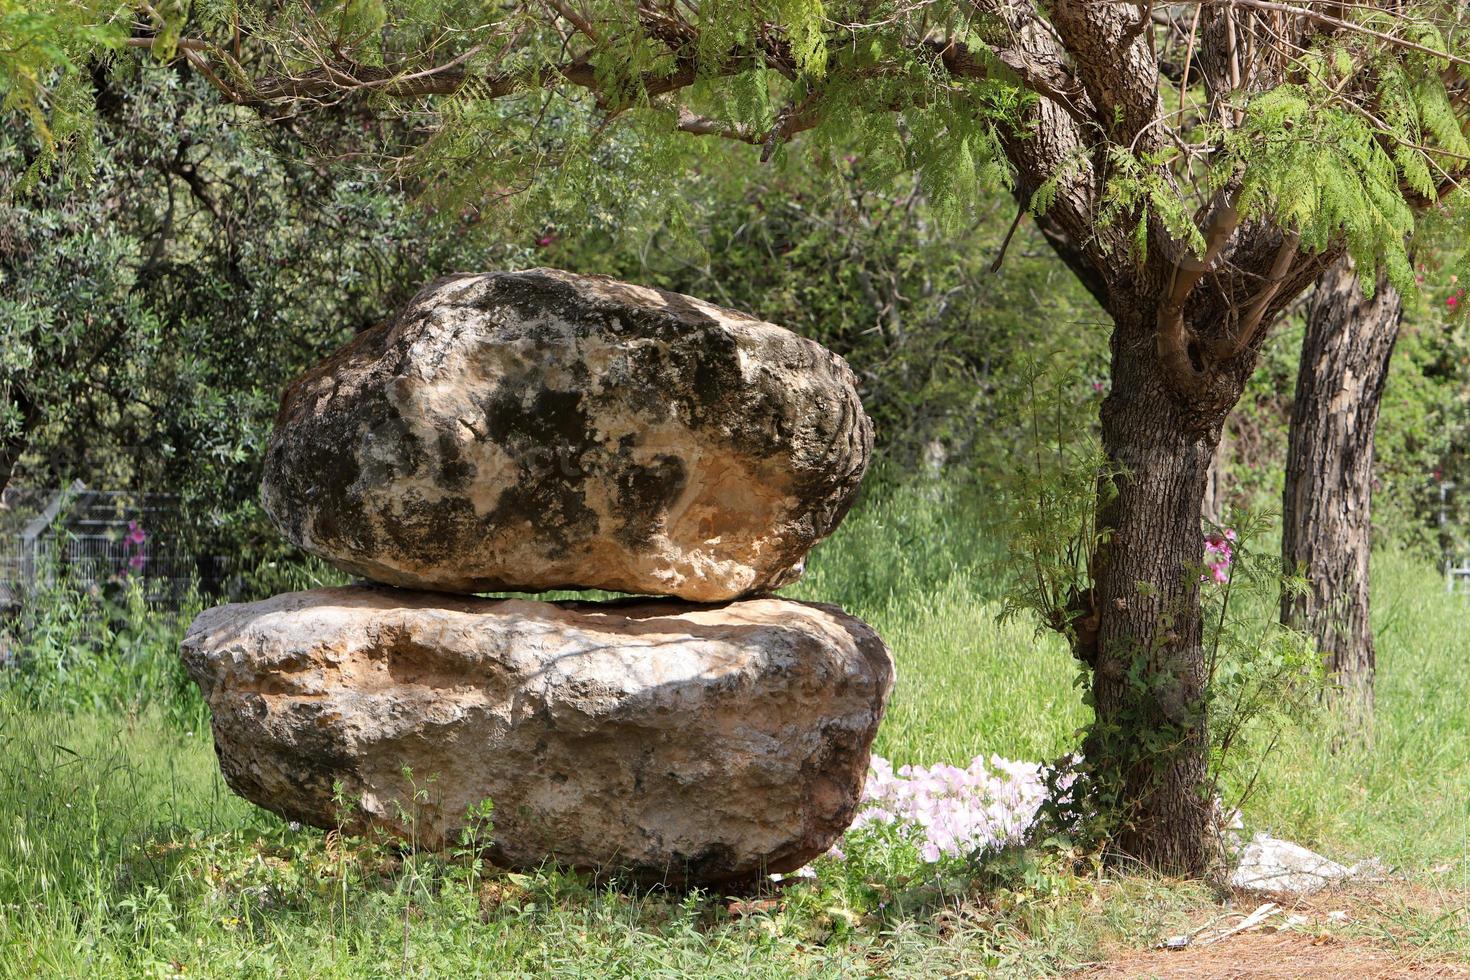 pedras em um parque da cidade à beira-mar no norte de israel foto